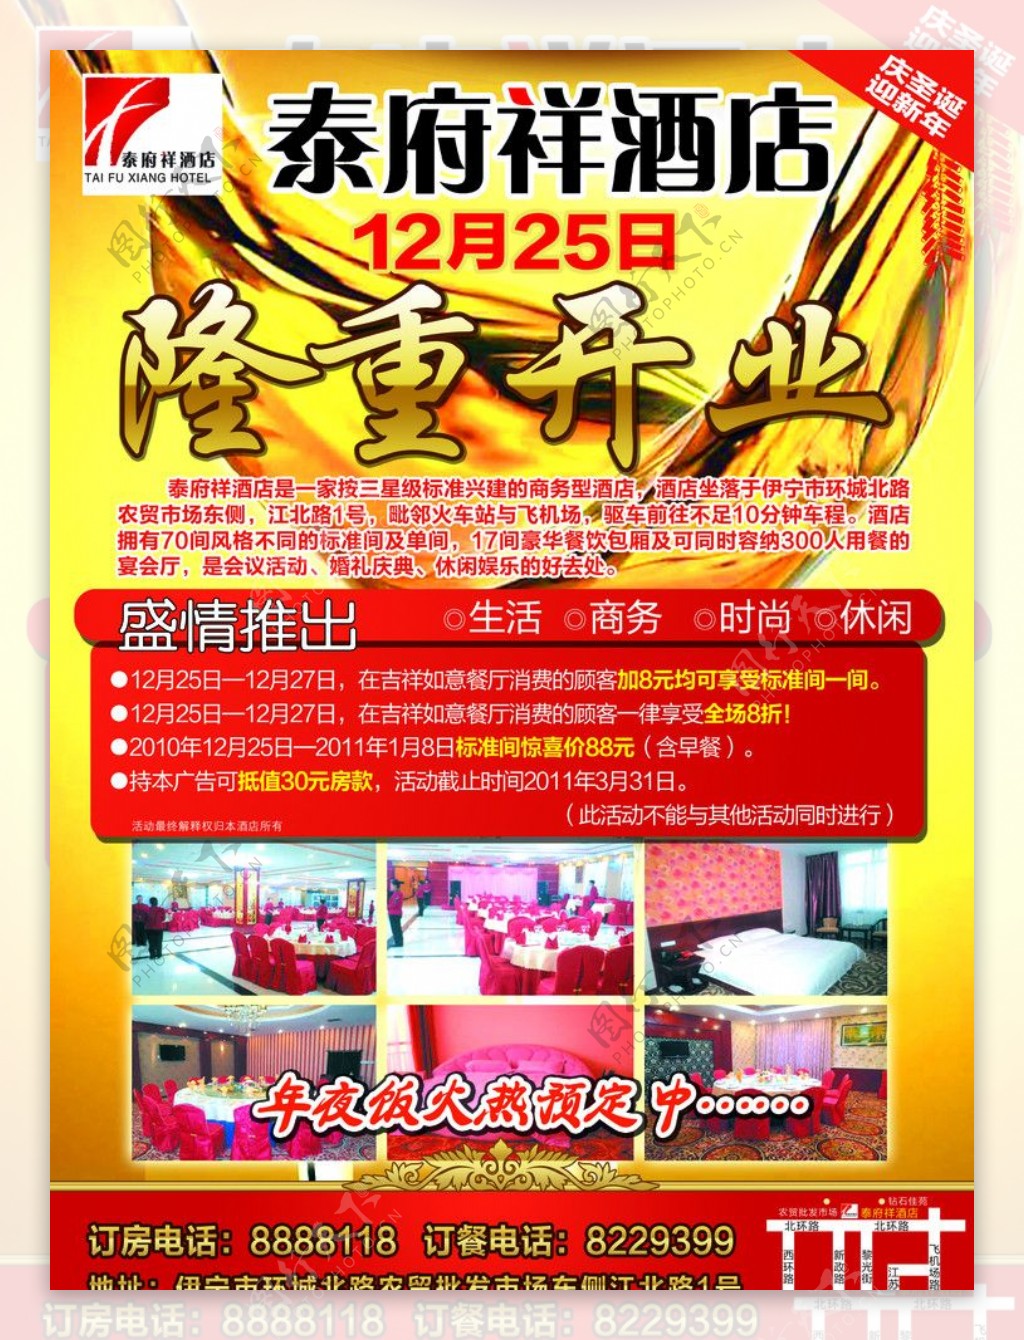 泰府祥酒店开业报纸广告图片